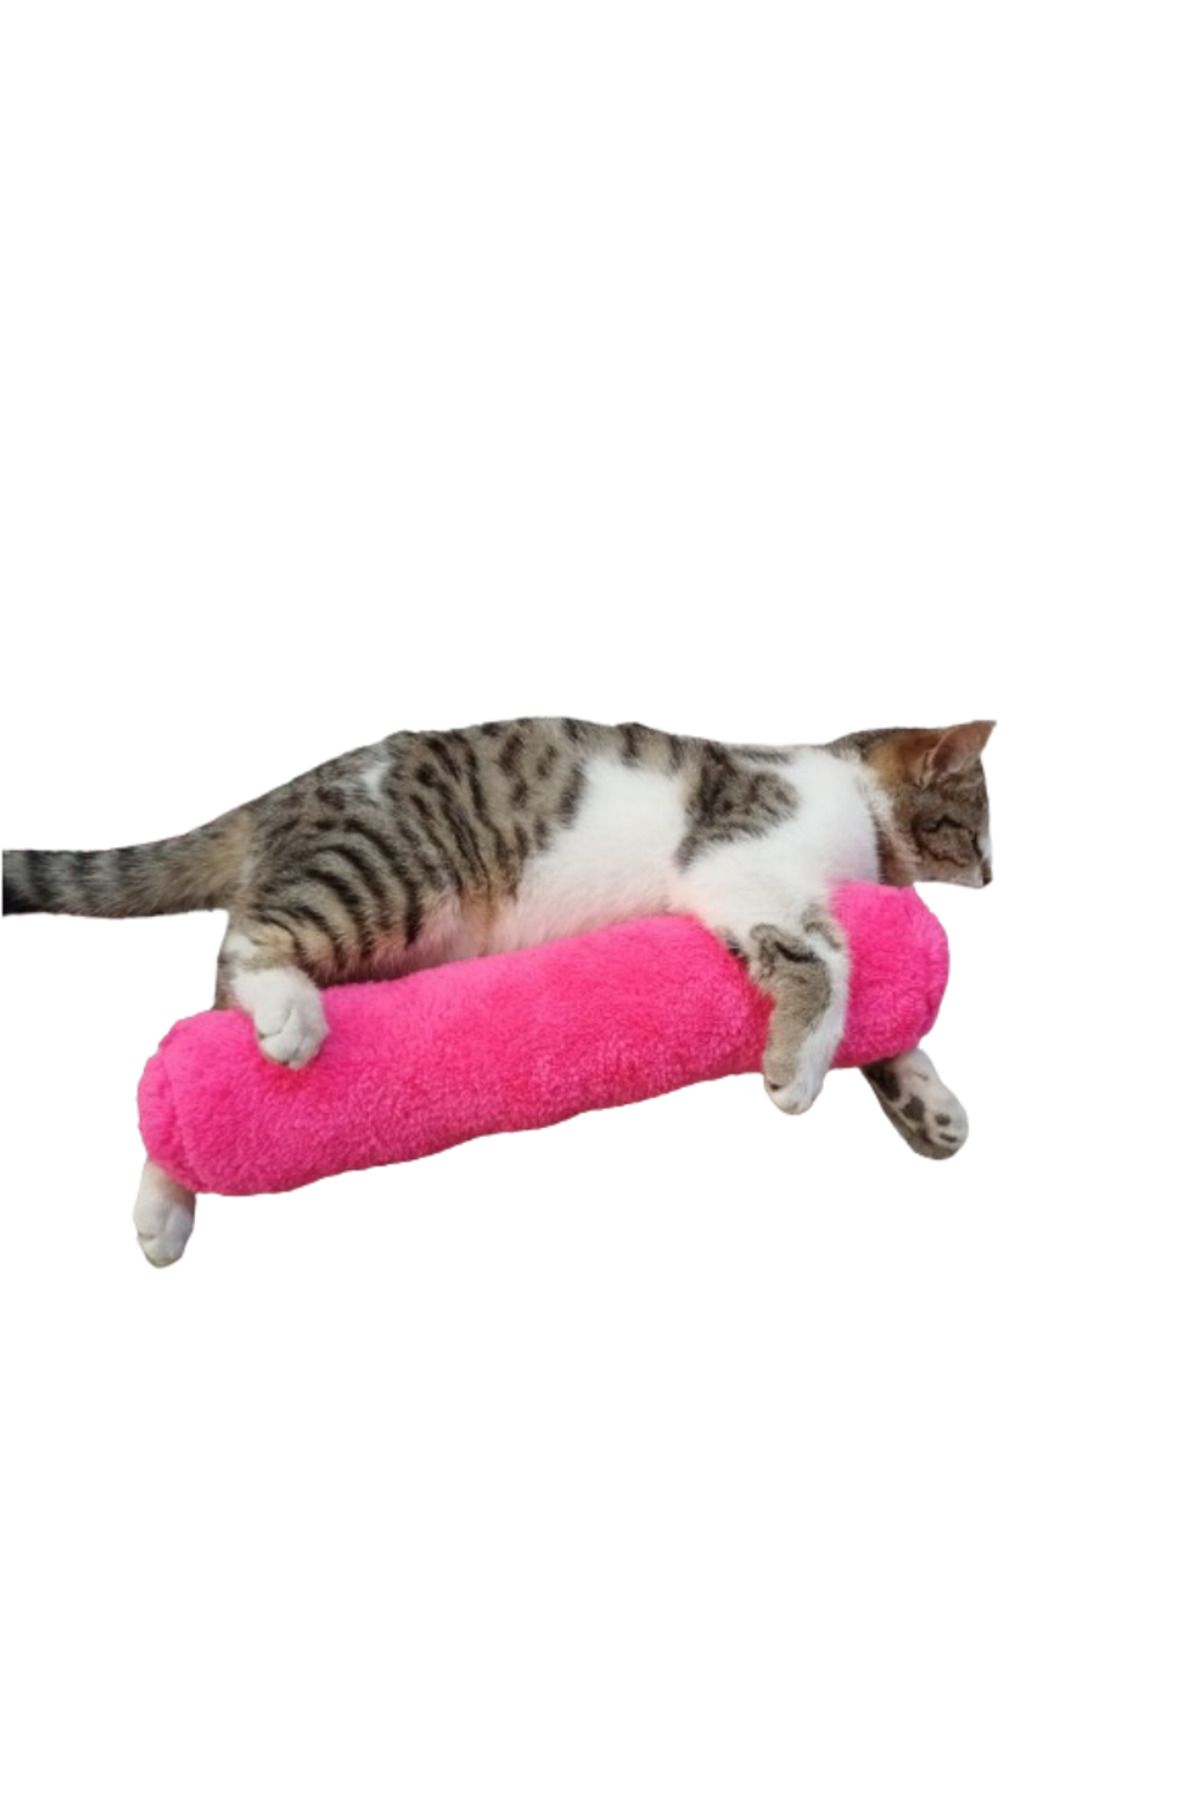 TİNEKE PETSHOP Kedi Oyuncağı Sarılma Yastığı Uyku Oyuncağı Kedi Otlu 30 Cm Peluş ( 1 Adet ) FUŞYA